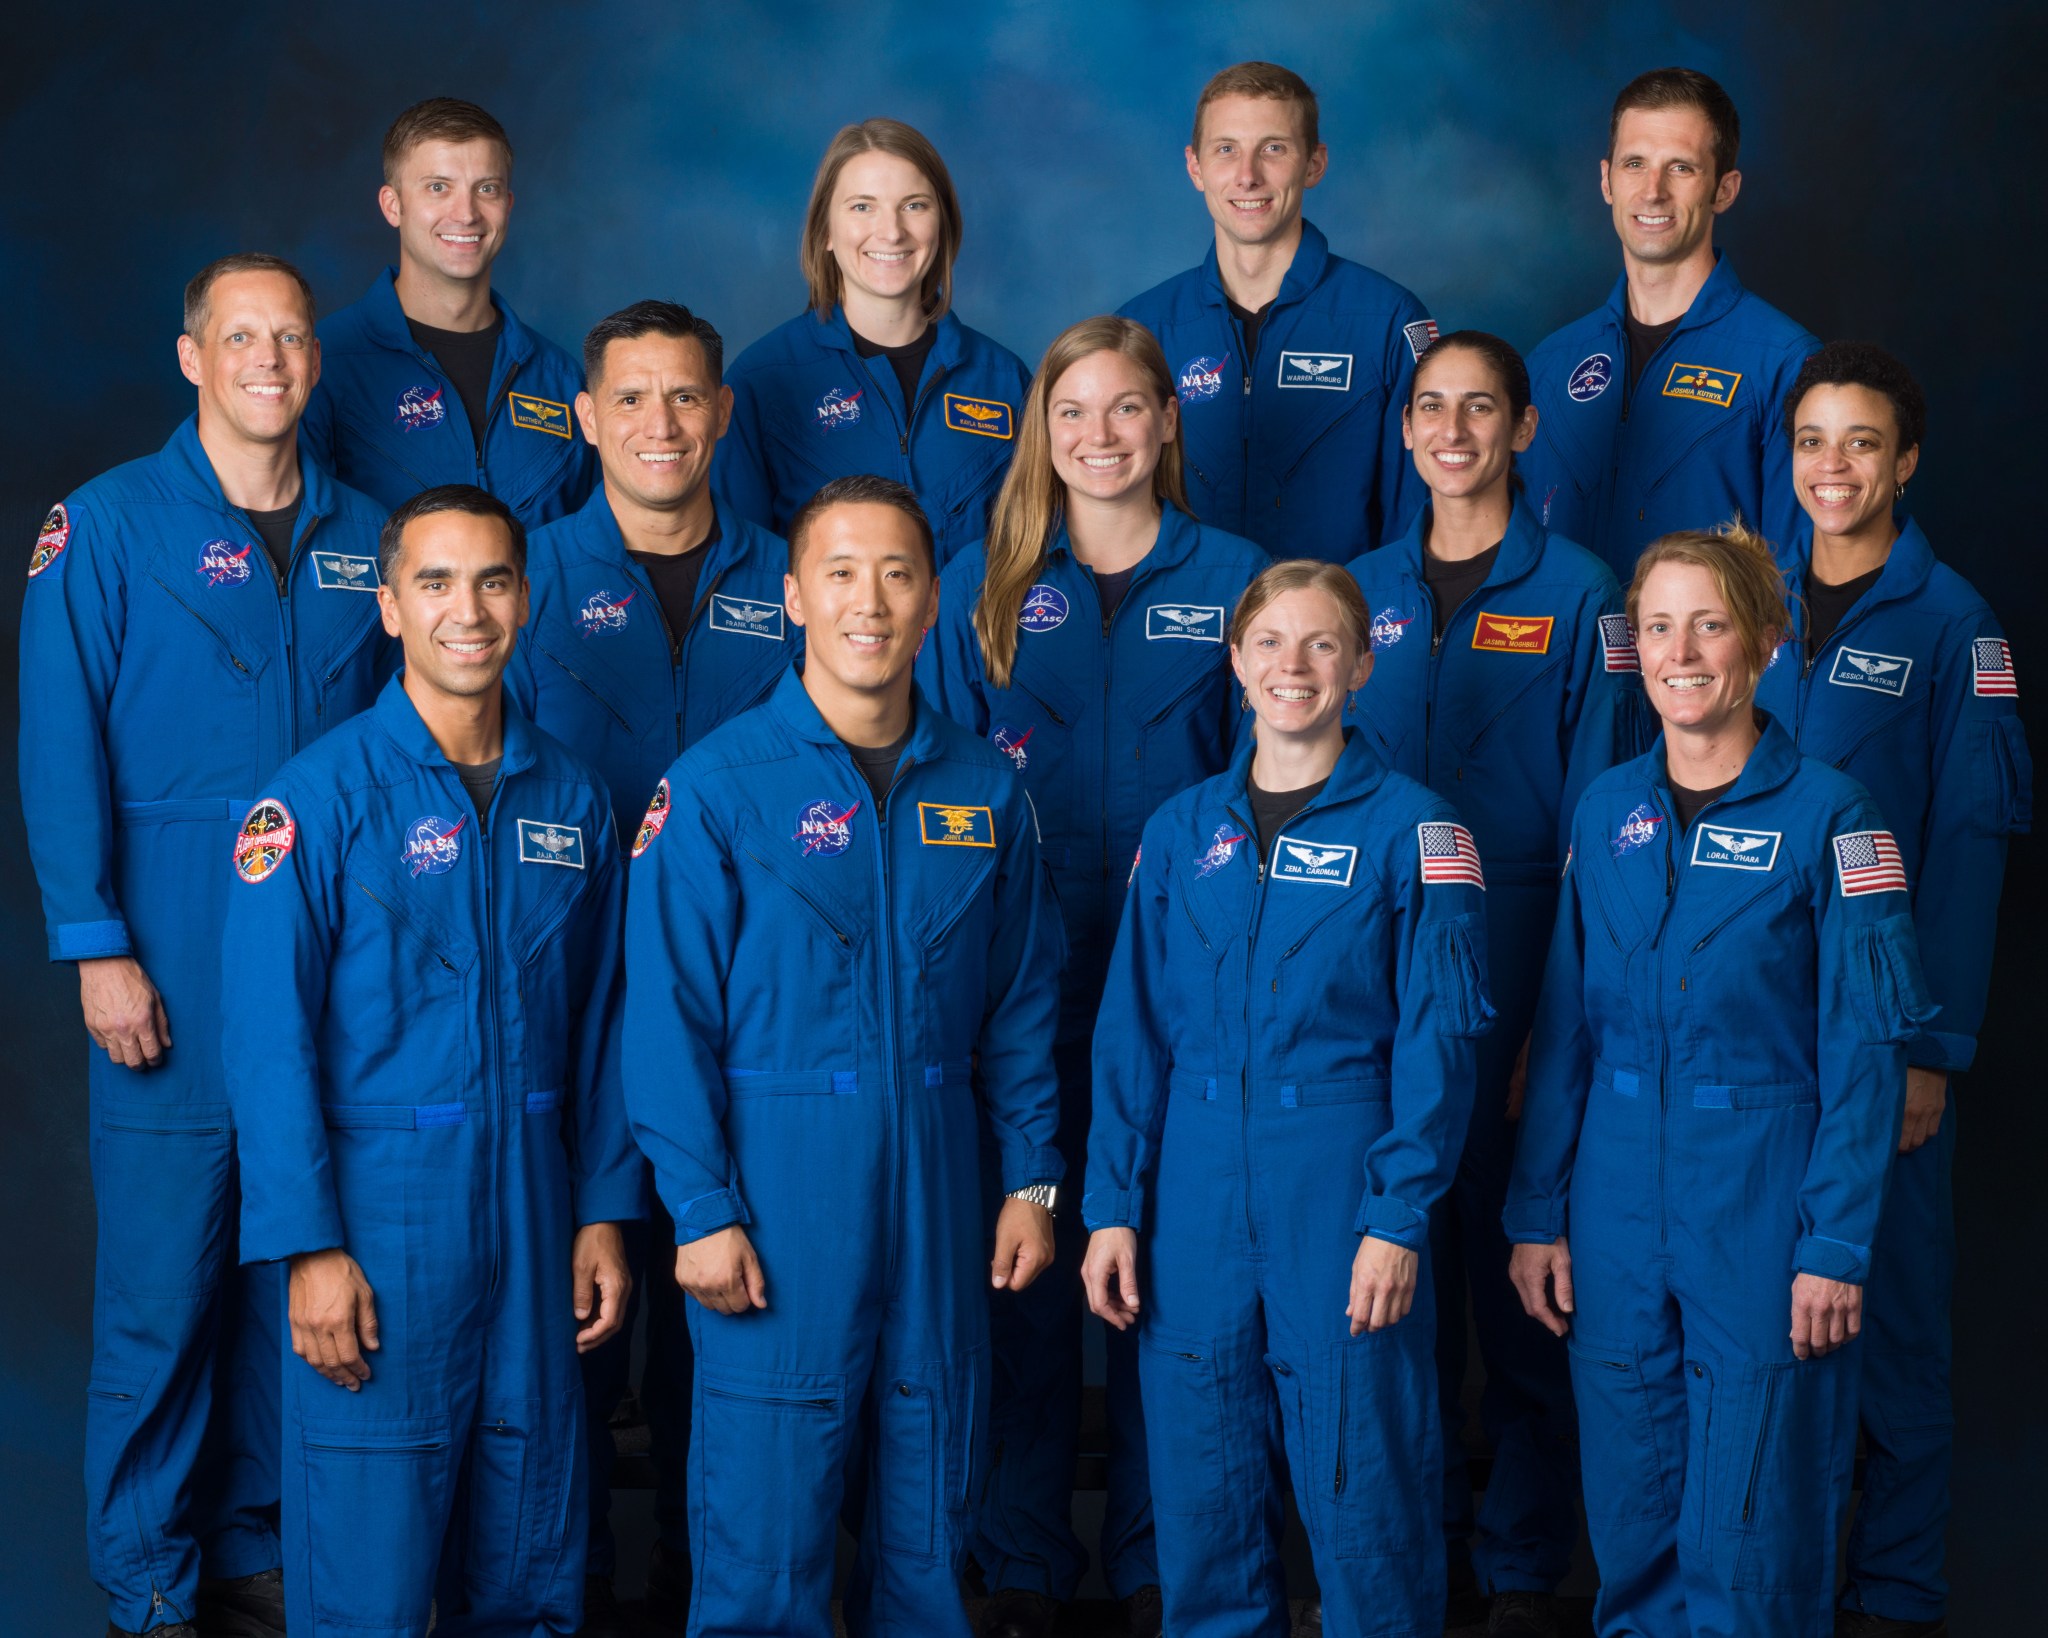 2017 Astronaut Class